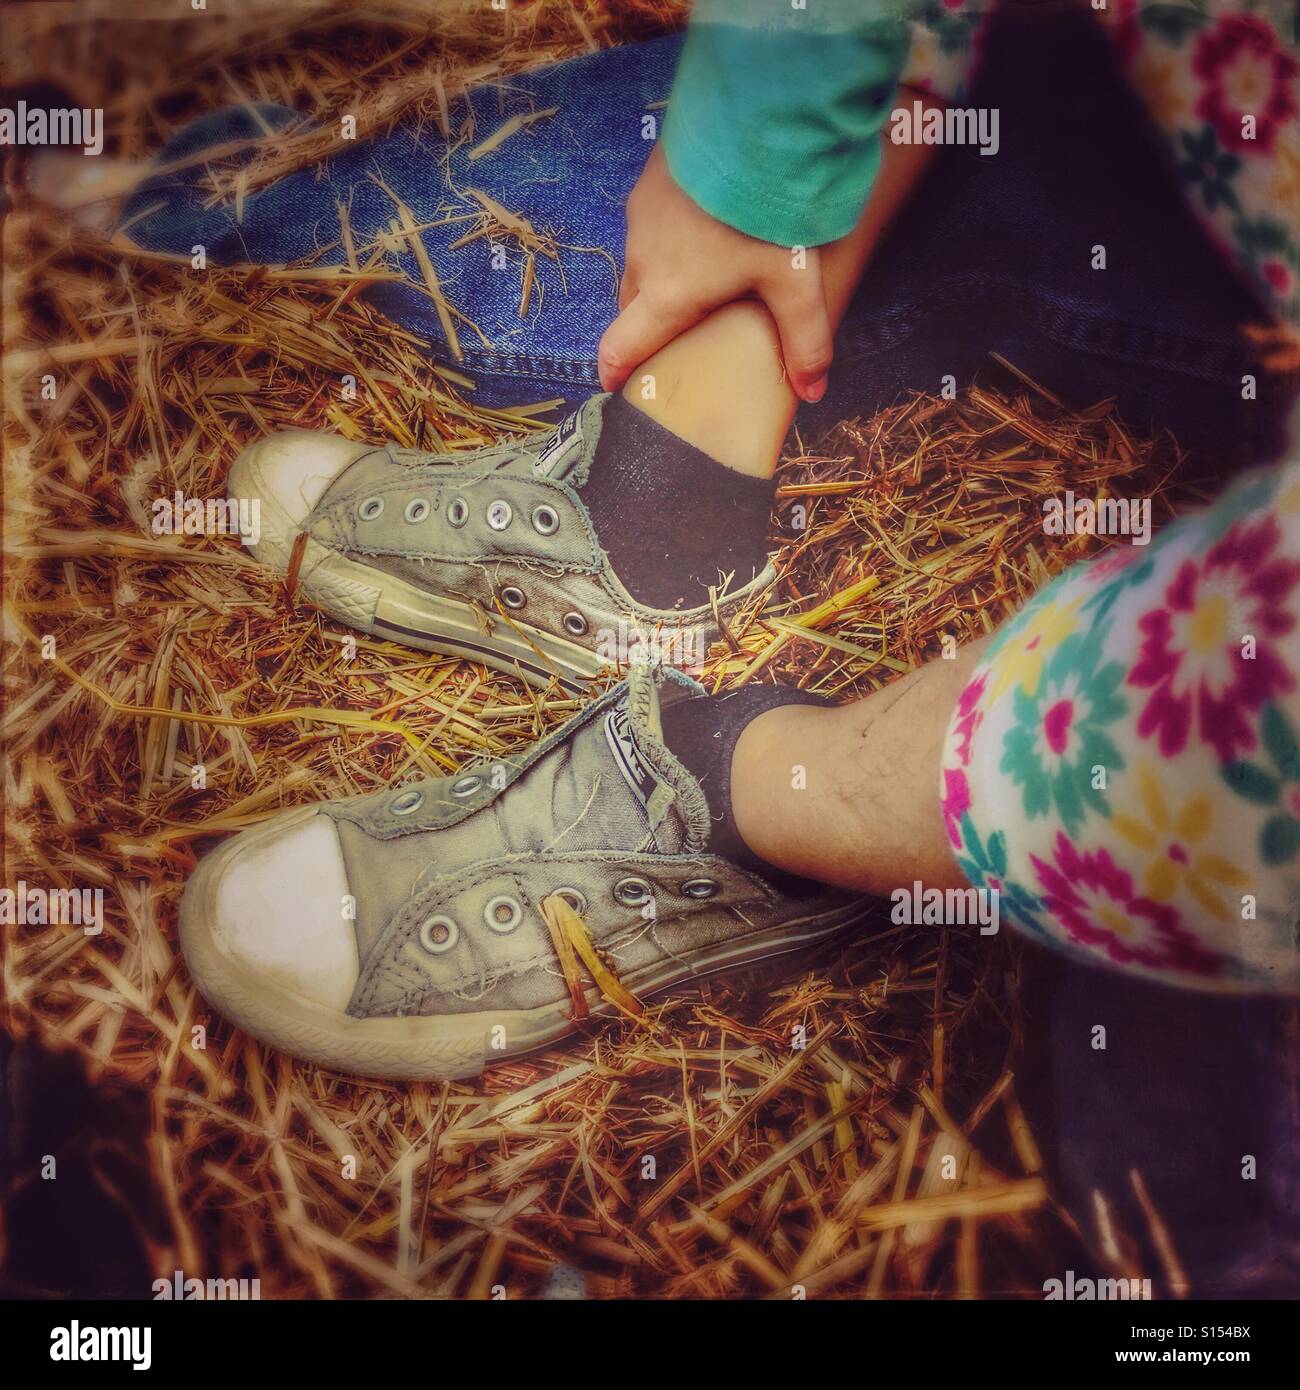 A girl's feet on a hayride. Stock Photo